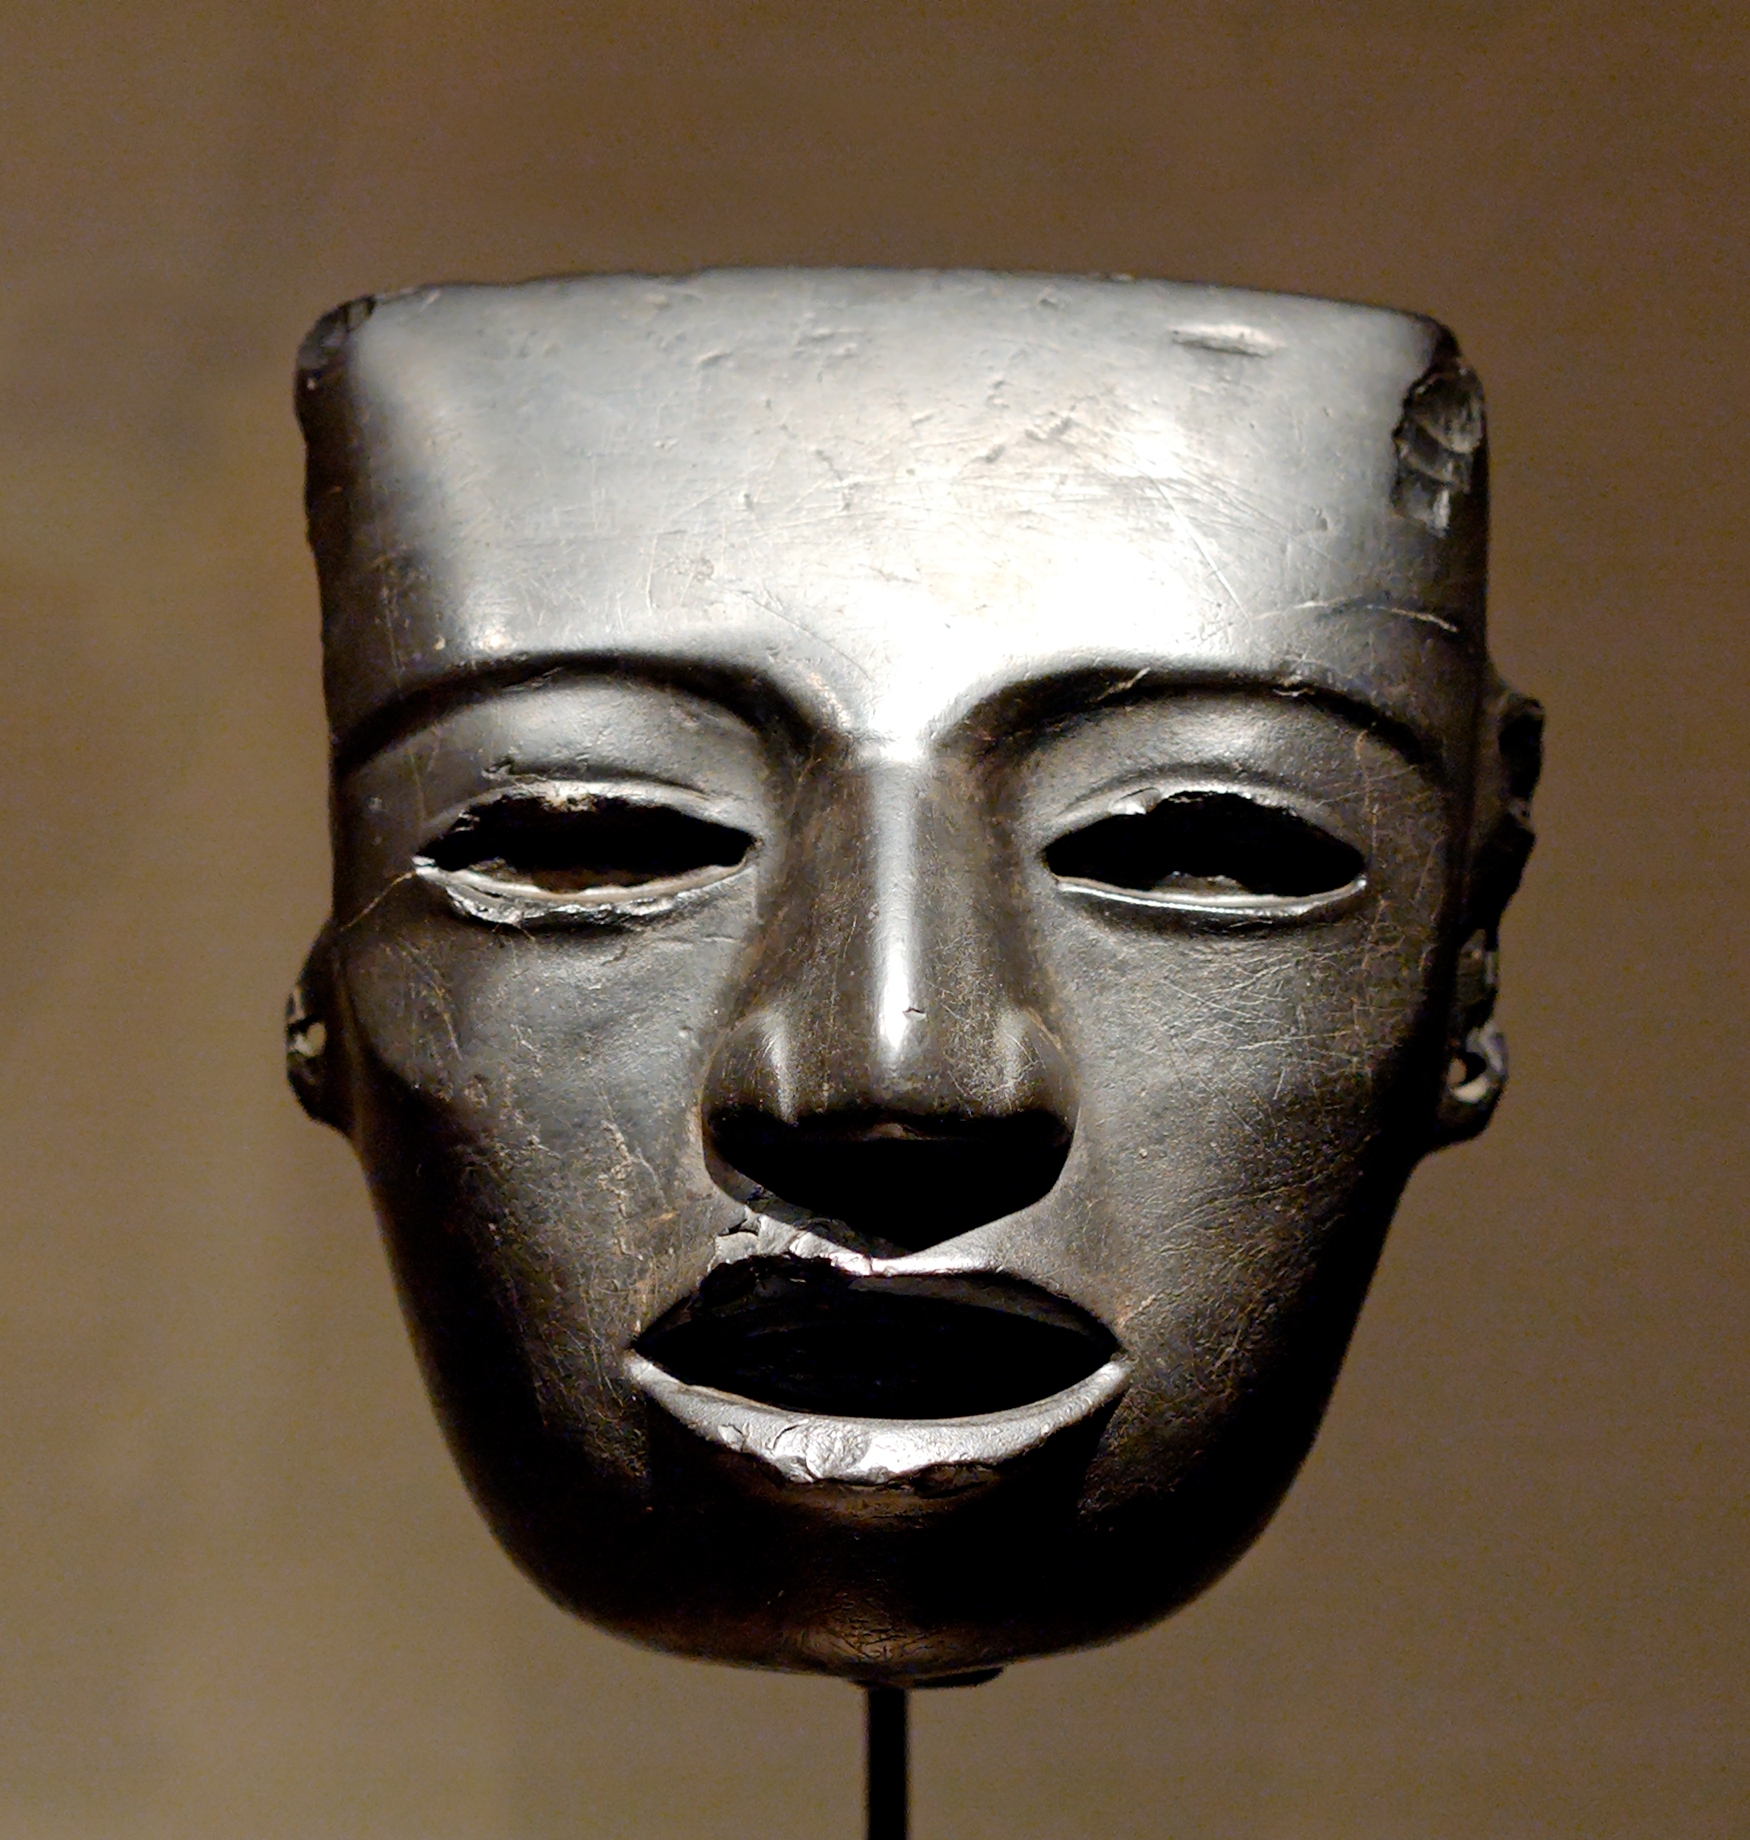 Mascara encontrada en Teotihuacan, perteneciente a la cultura dominante antes de la llegada de los mexicas-aztecas.